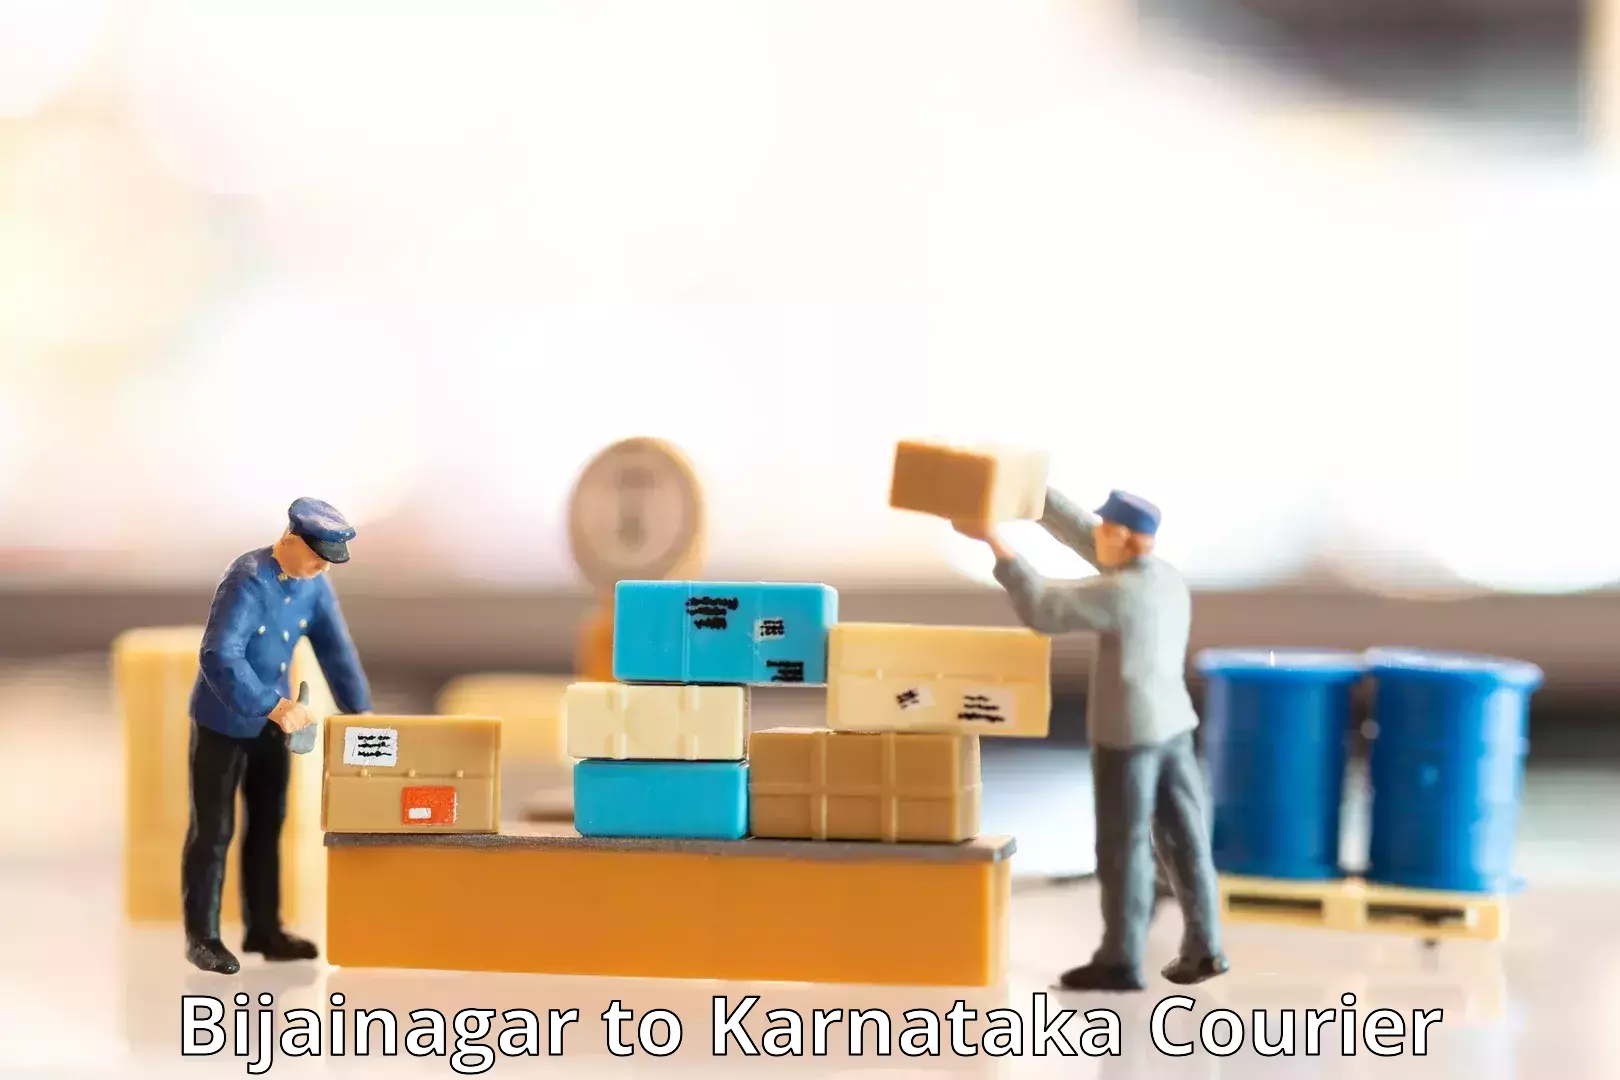 Courier service partnerships Bijainagar to Deodurga